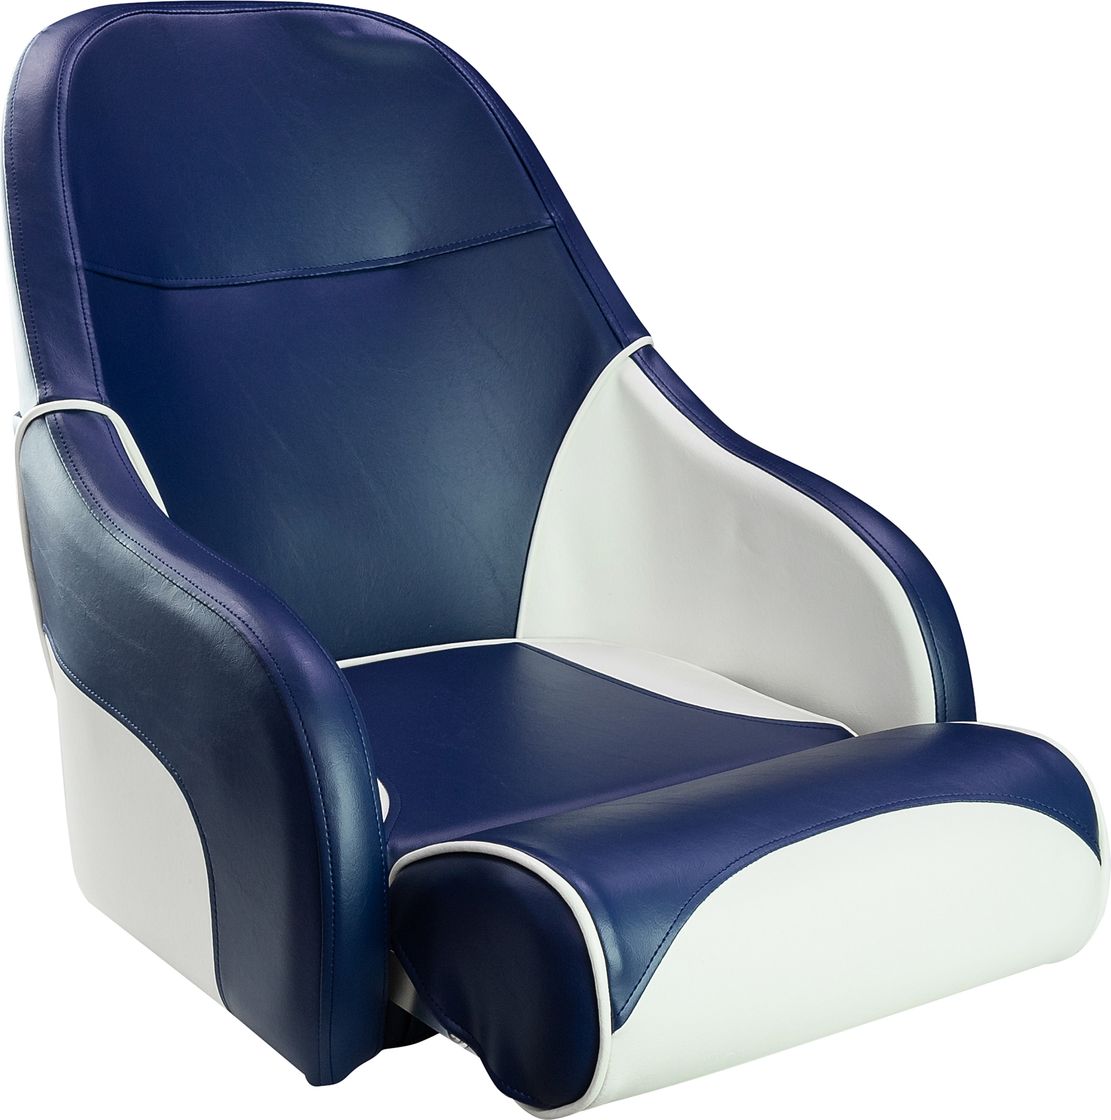 Кресло с болстером Ocean Flip Up, обивка синий/белый винил 13127WB-MR кресло с болстером ocean flip up обивка белый синий винил 13127 mr